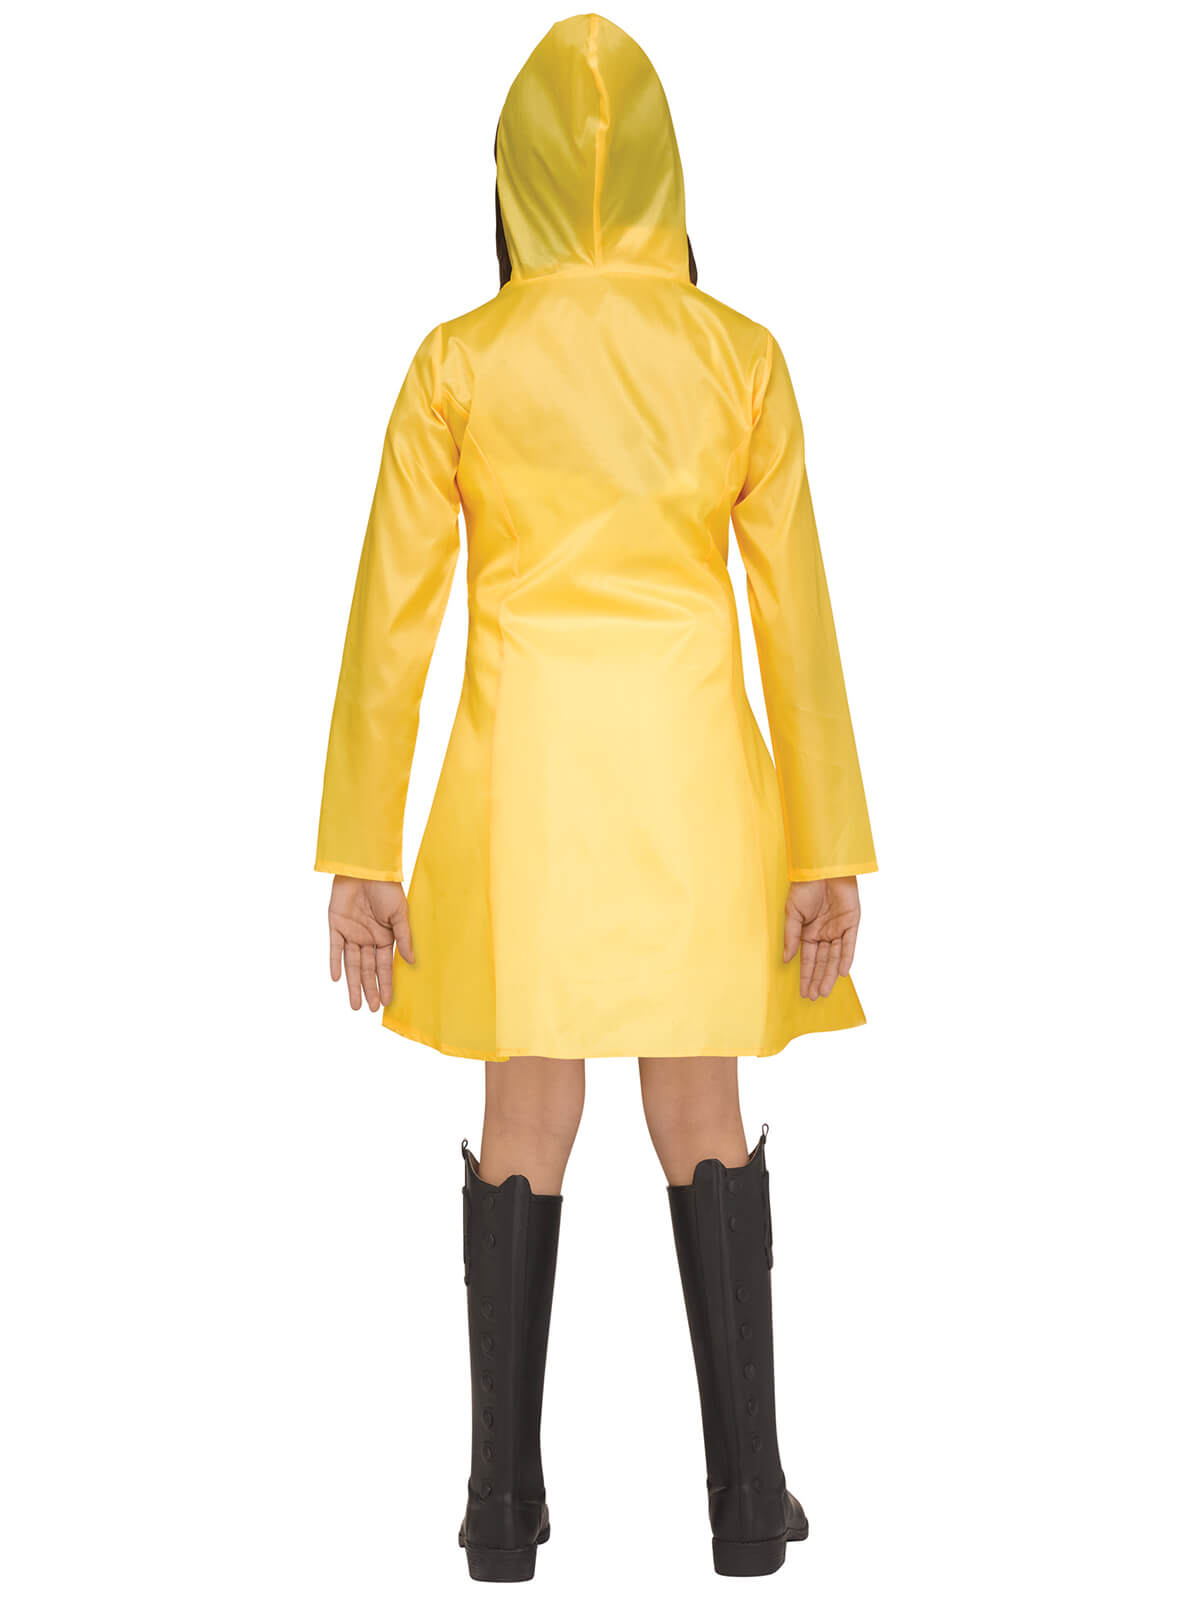 Yellow Raincoat Child Halloween Costume